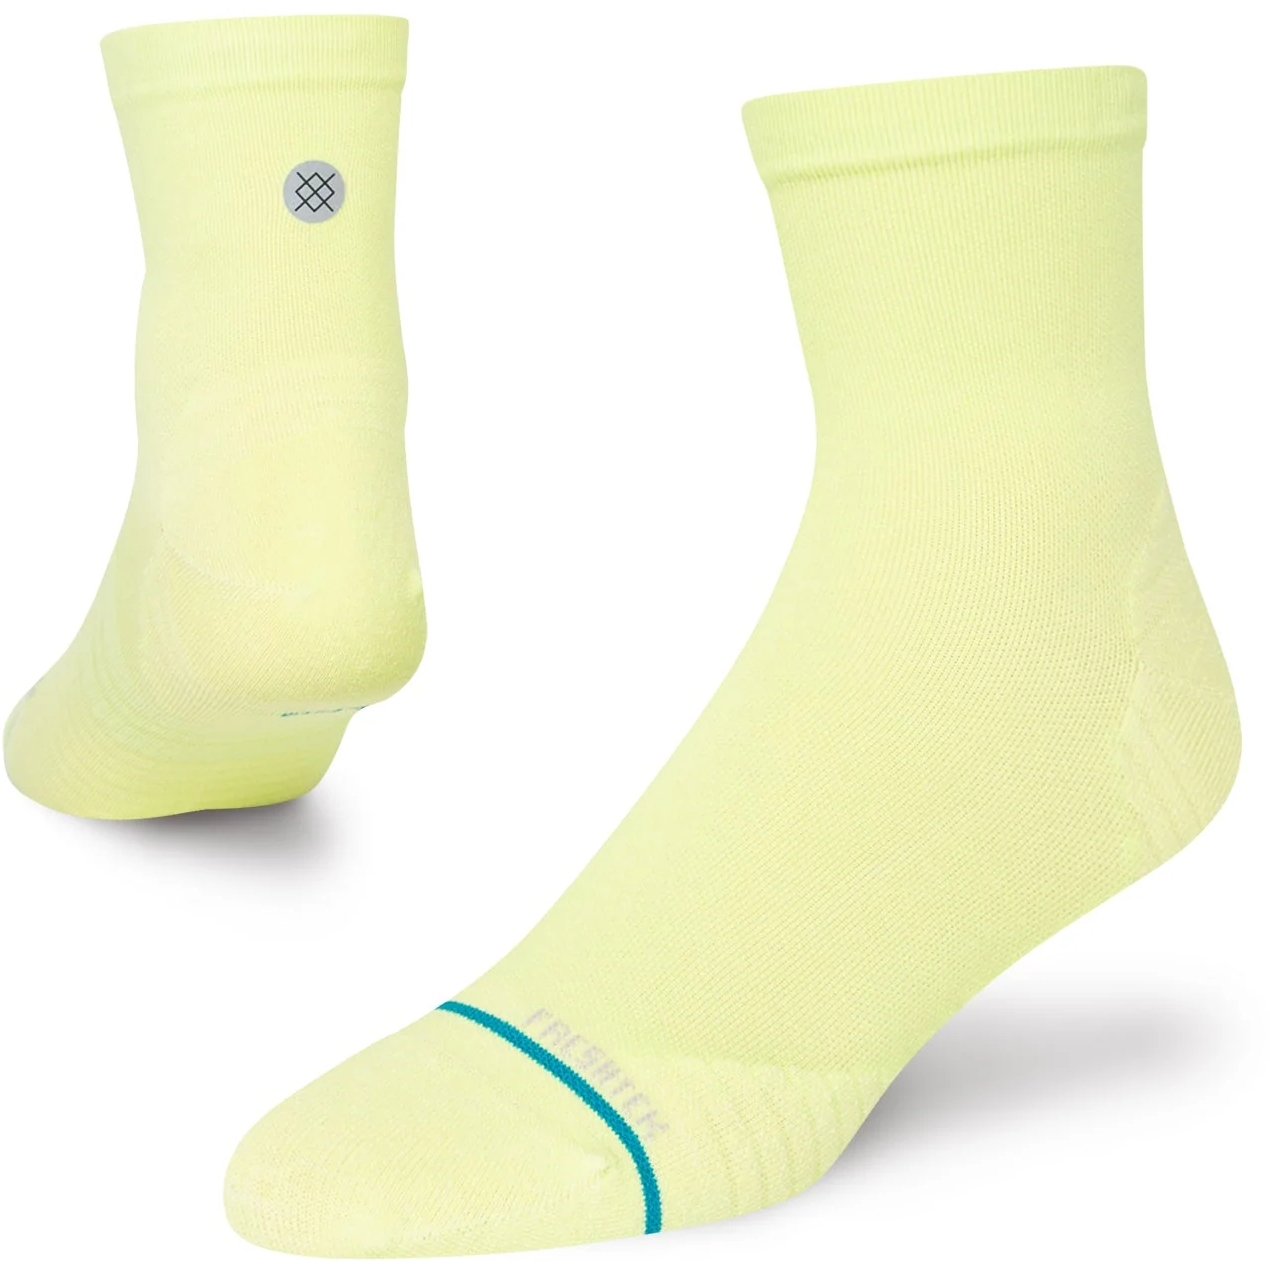 Produktbild von Stance Nocturnal Quarter Socken Unisex - mint